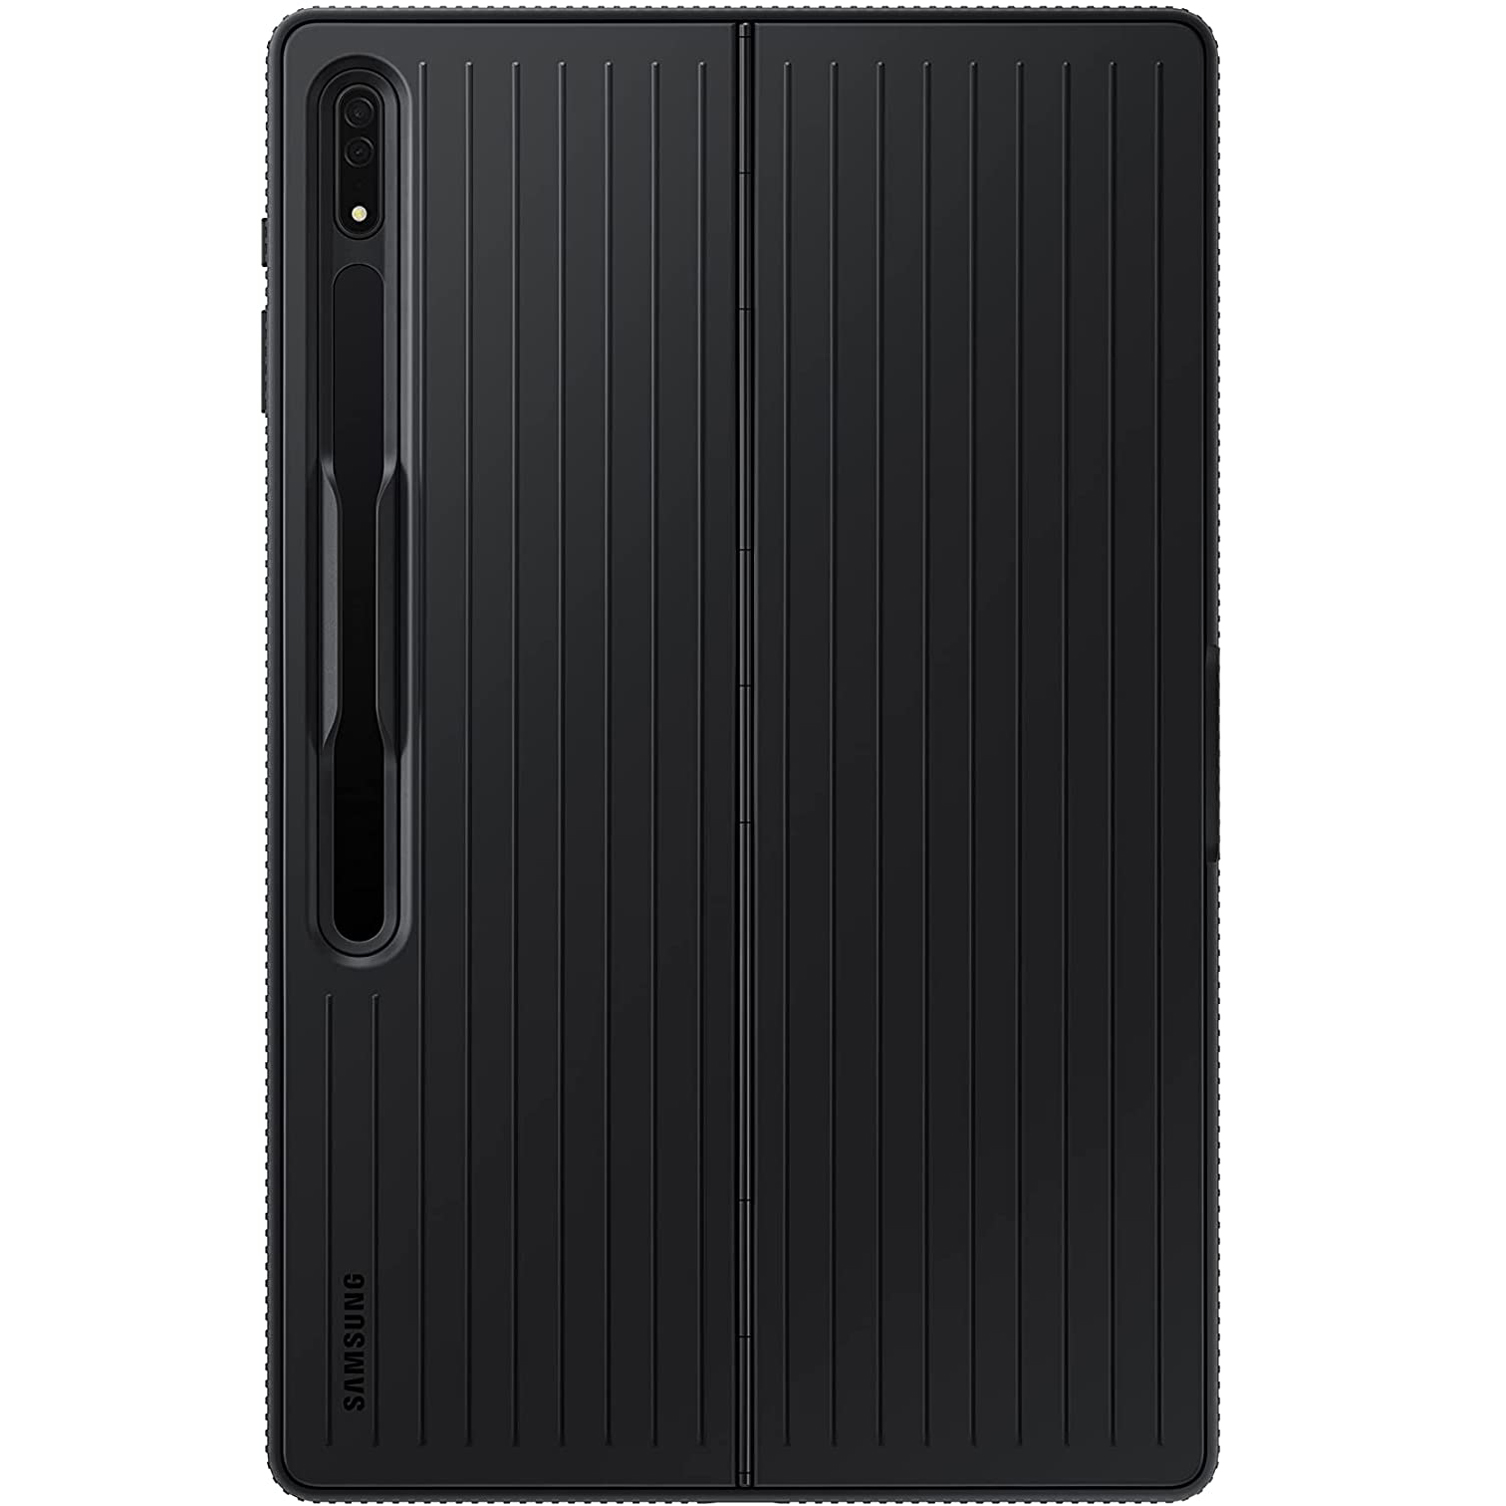  کاور سامسونگ مدل S Protective مناسب برای تبلت سامسونگ Galaxy Tab S7 Plus/S7Fe//S8 Plus